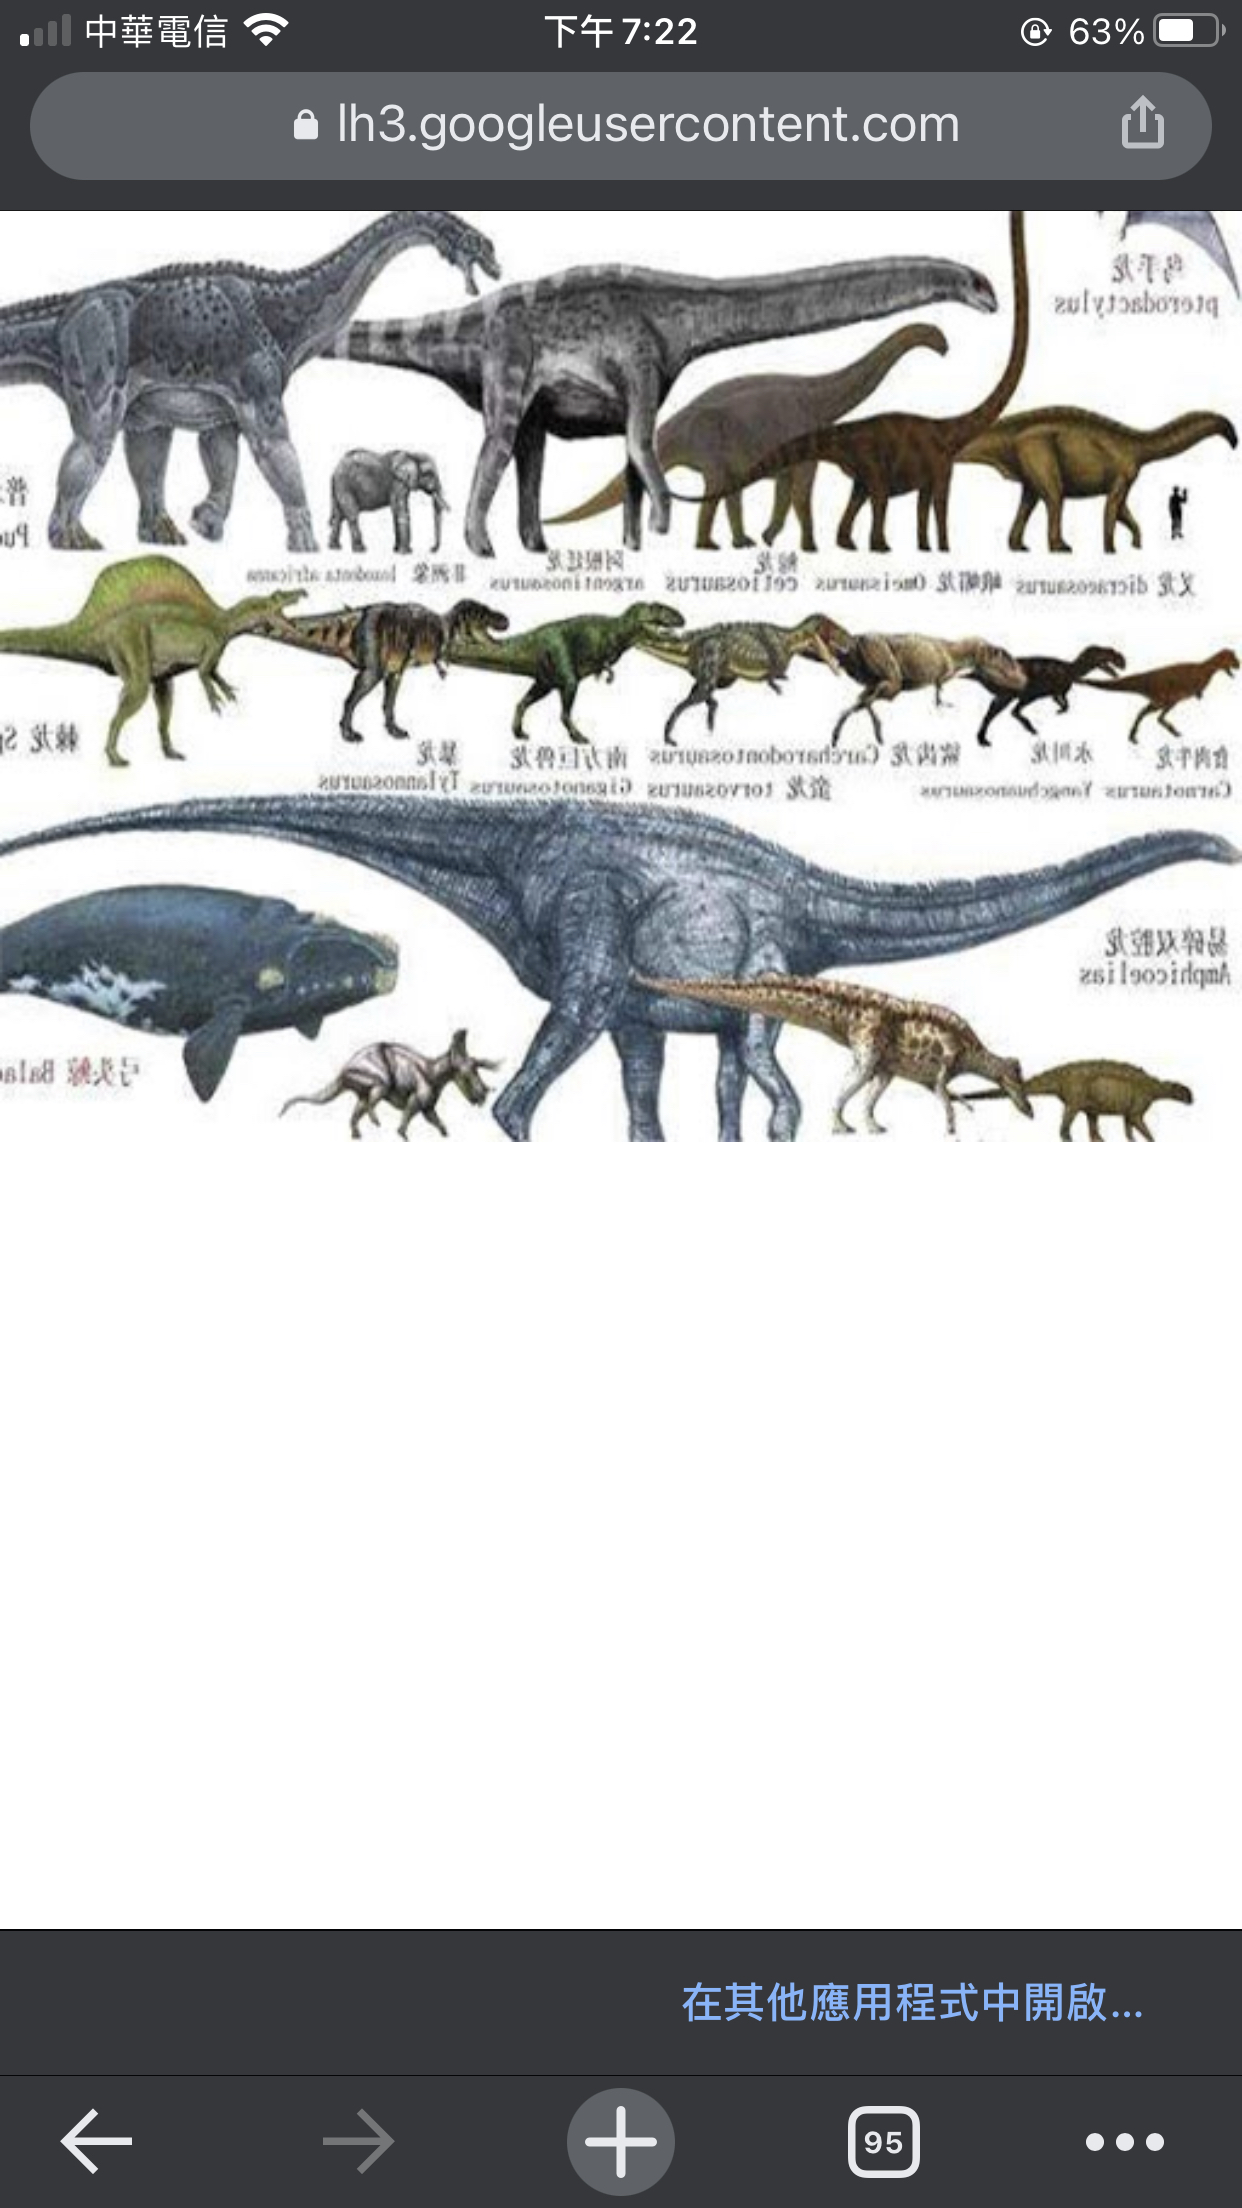 恐龙的种类有哪些？ - 知乎